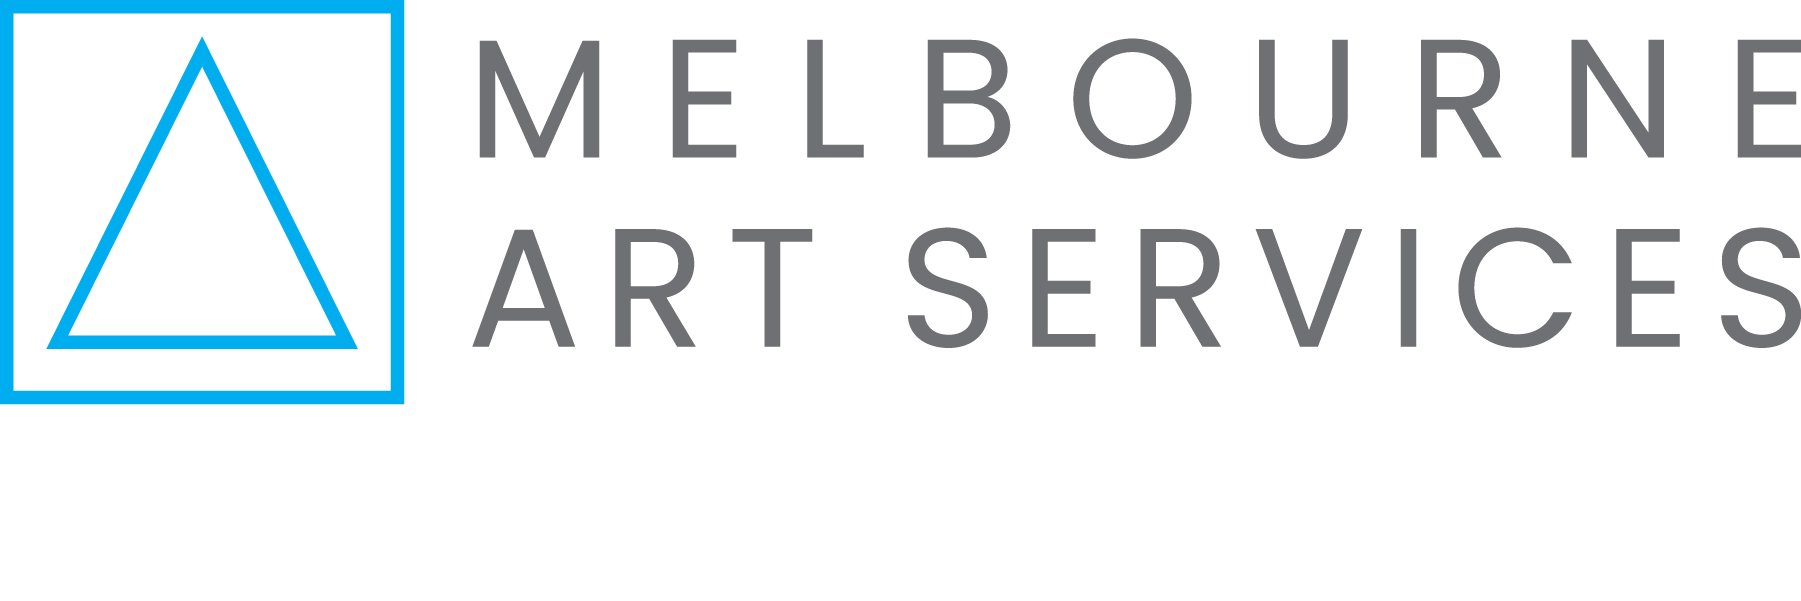 MELBOURNE ART SERVICES